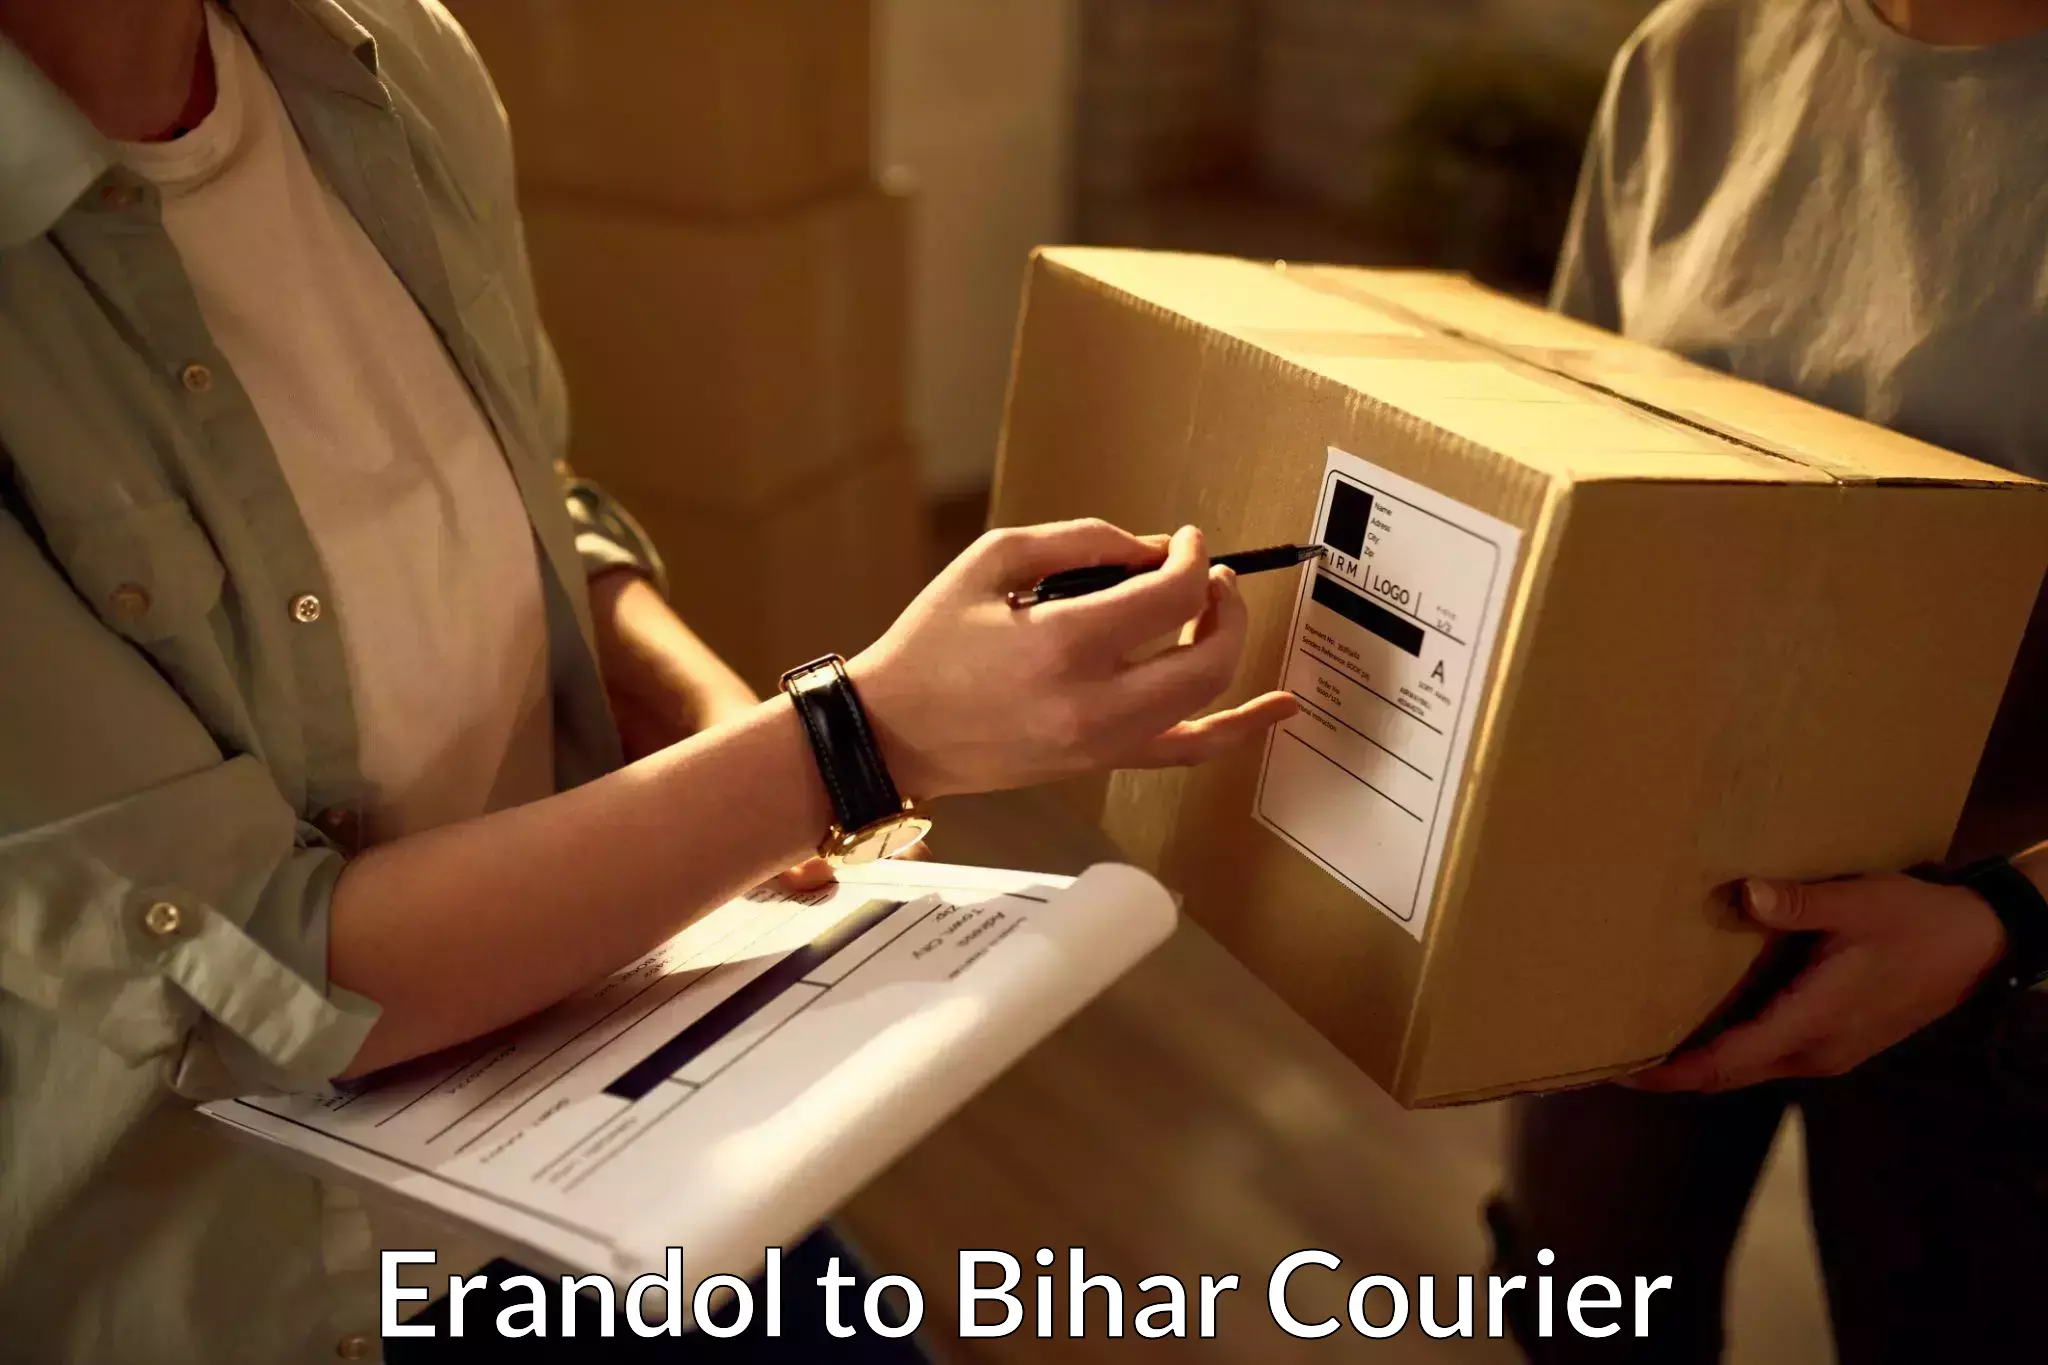 High-speed logistics services Erandol to Bihar